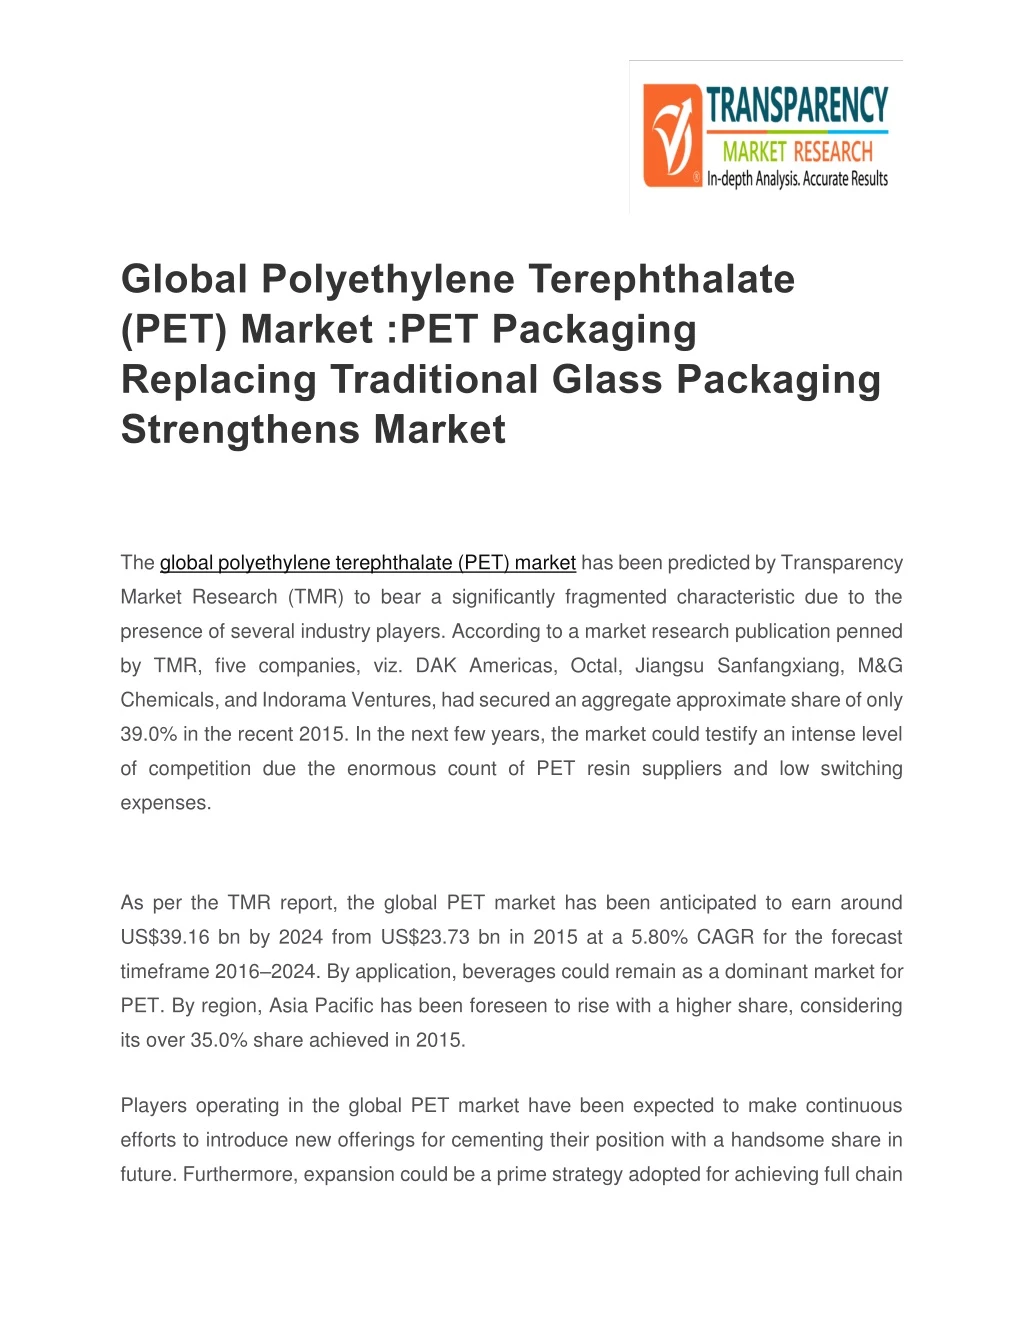 global polyethylene terephthalate pet market